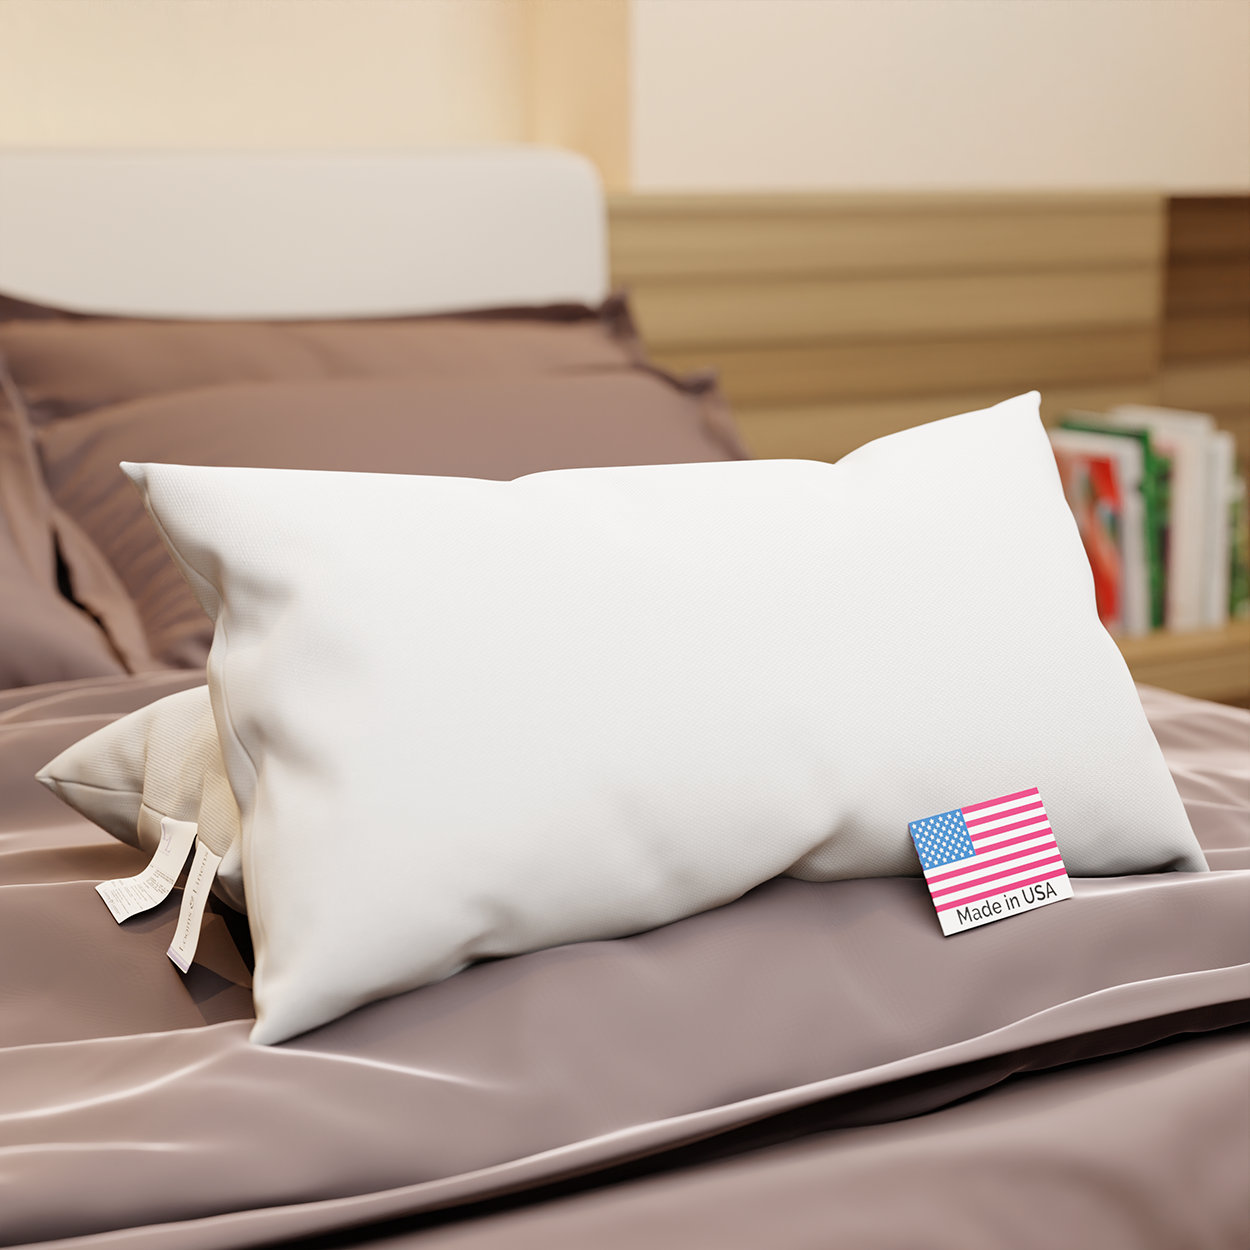 Casper Sleep Essential Polyester Rectangular Pillow for Sleeping Standard White